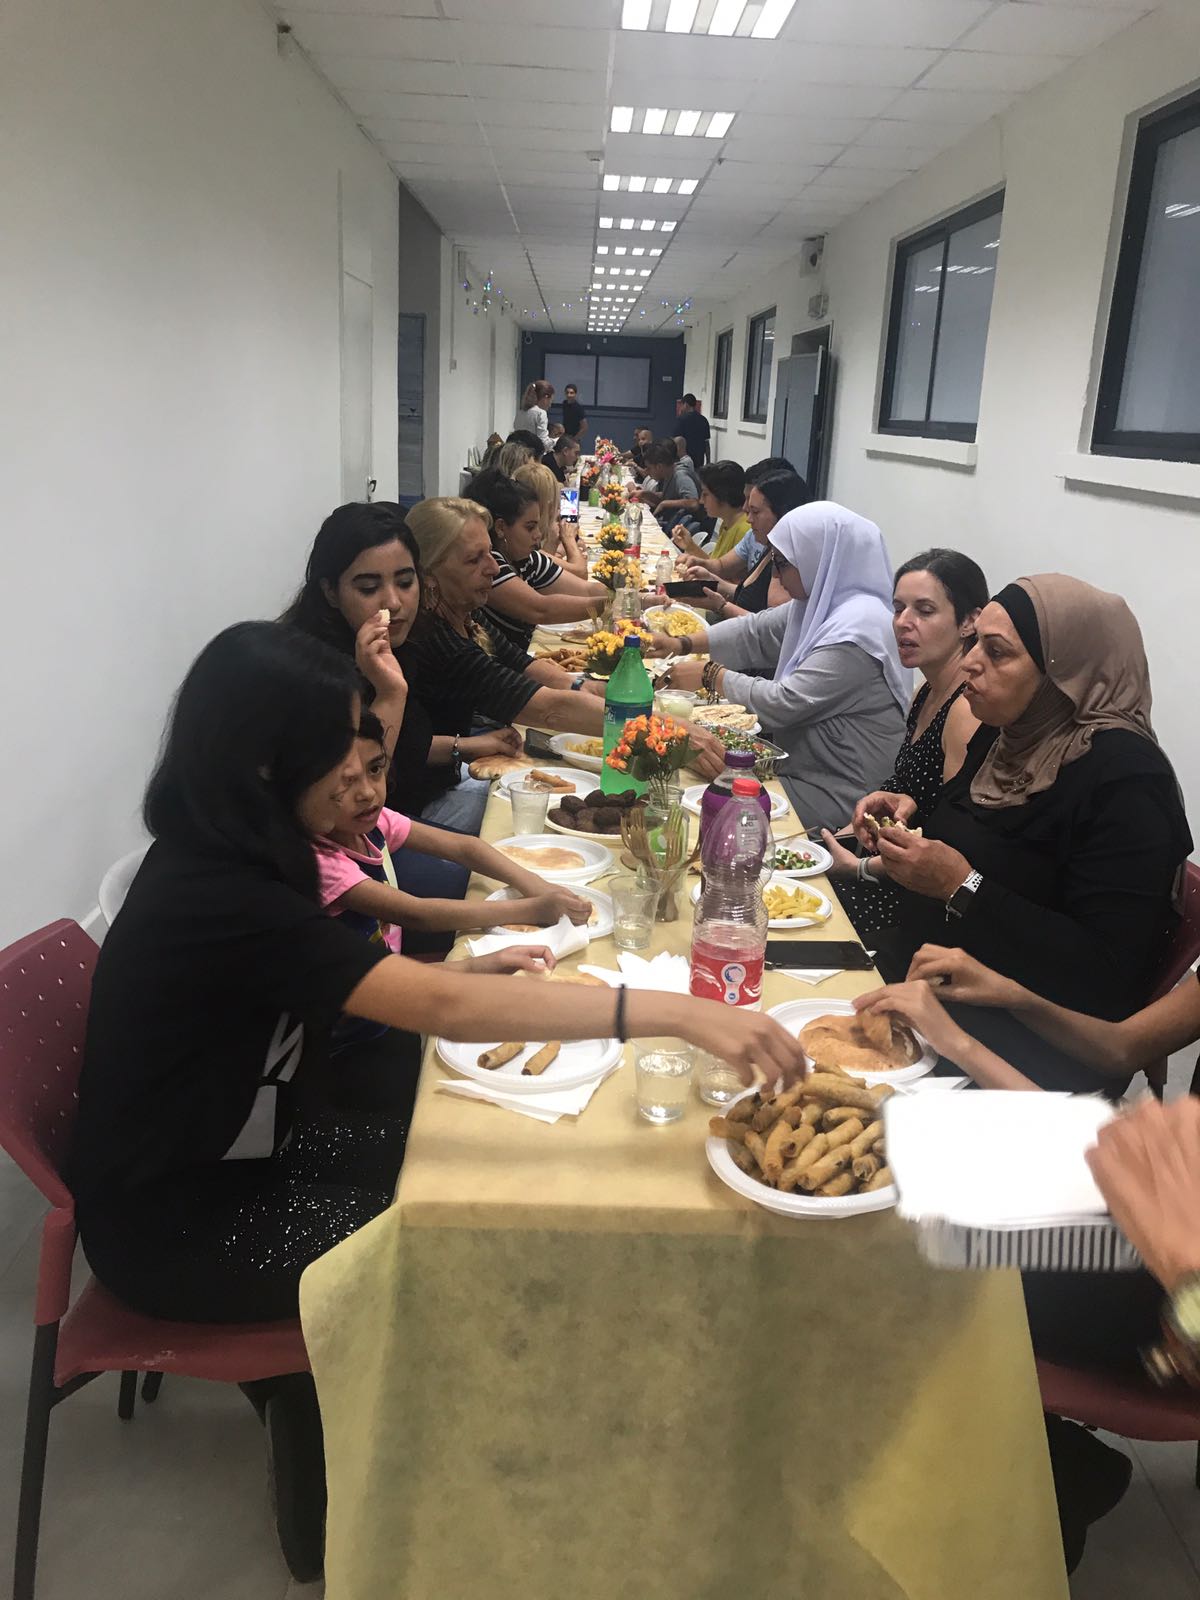  افطار جماعي وتوزيع شهادات في مدرسة عمال 1 التكنولوجية 